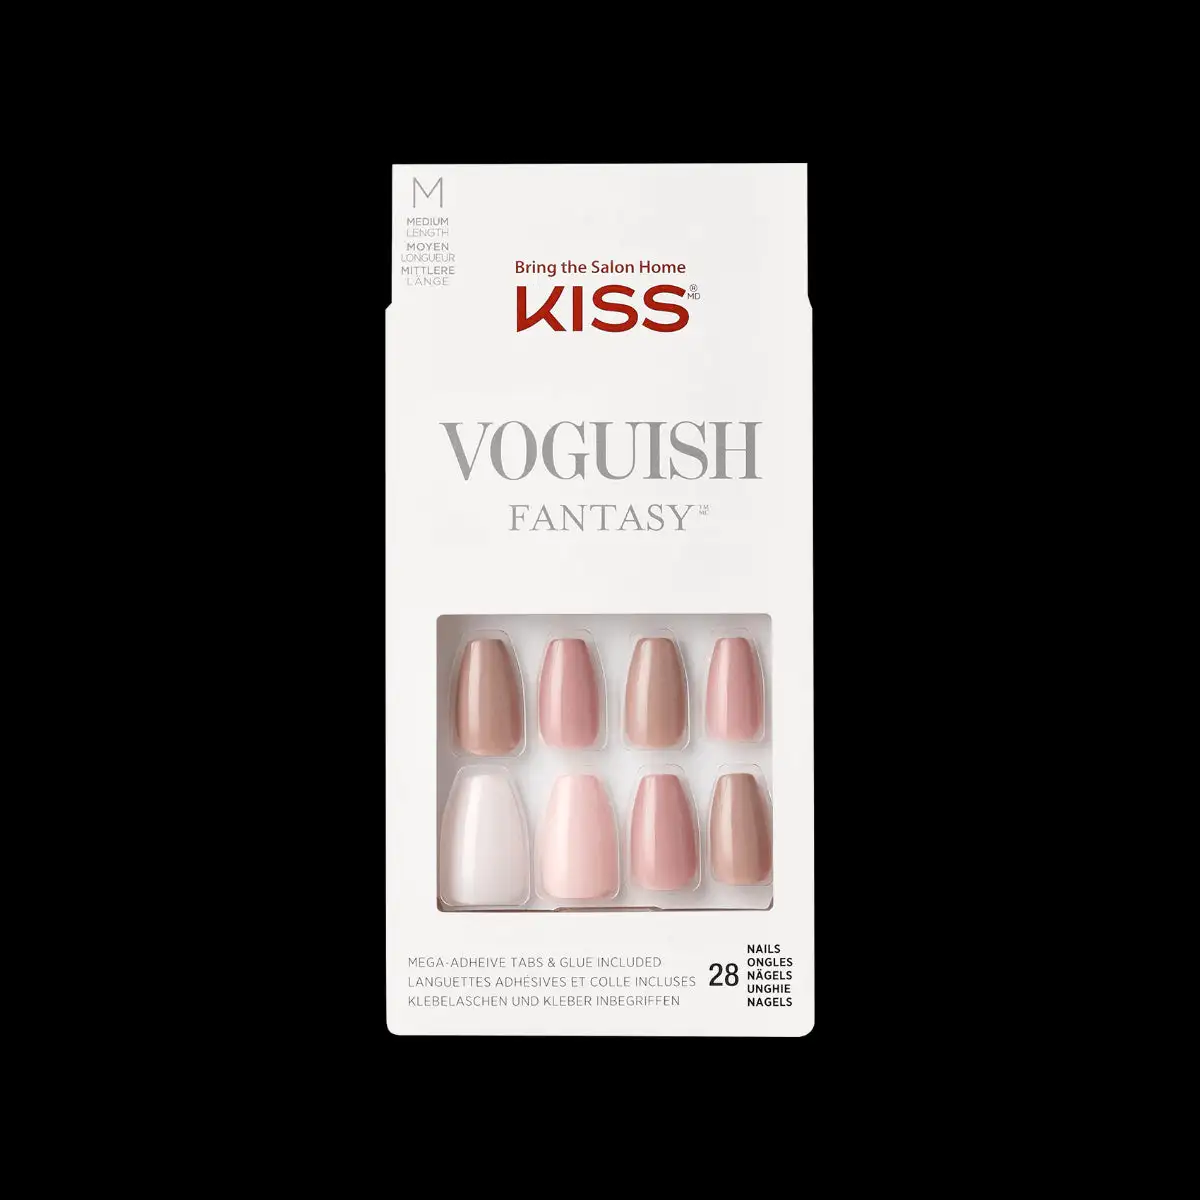 Kiss voguish fantasy nails fv04x_9746. DIAYTAR SENEGAL - L'Art du Shopping Sublime. Naviguez à travers notre catalogue et choisissez parmi des produits qui ajoutent une touche raffinée à votre vie quotidienne.